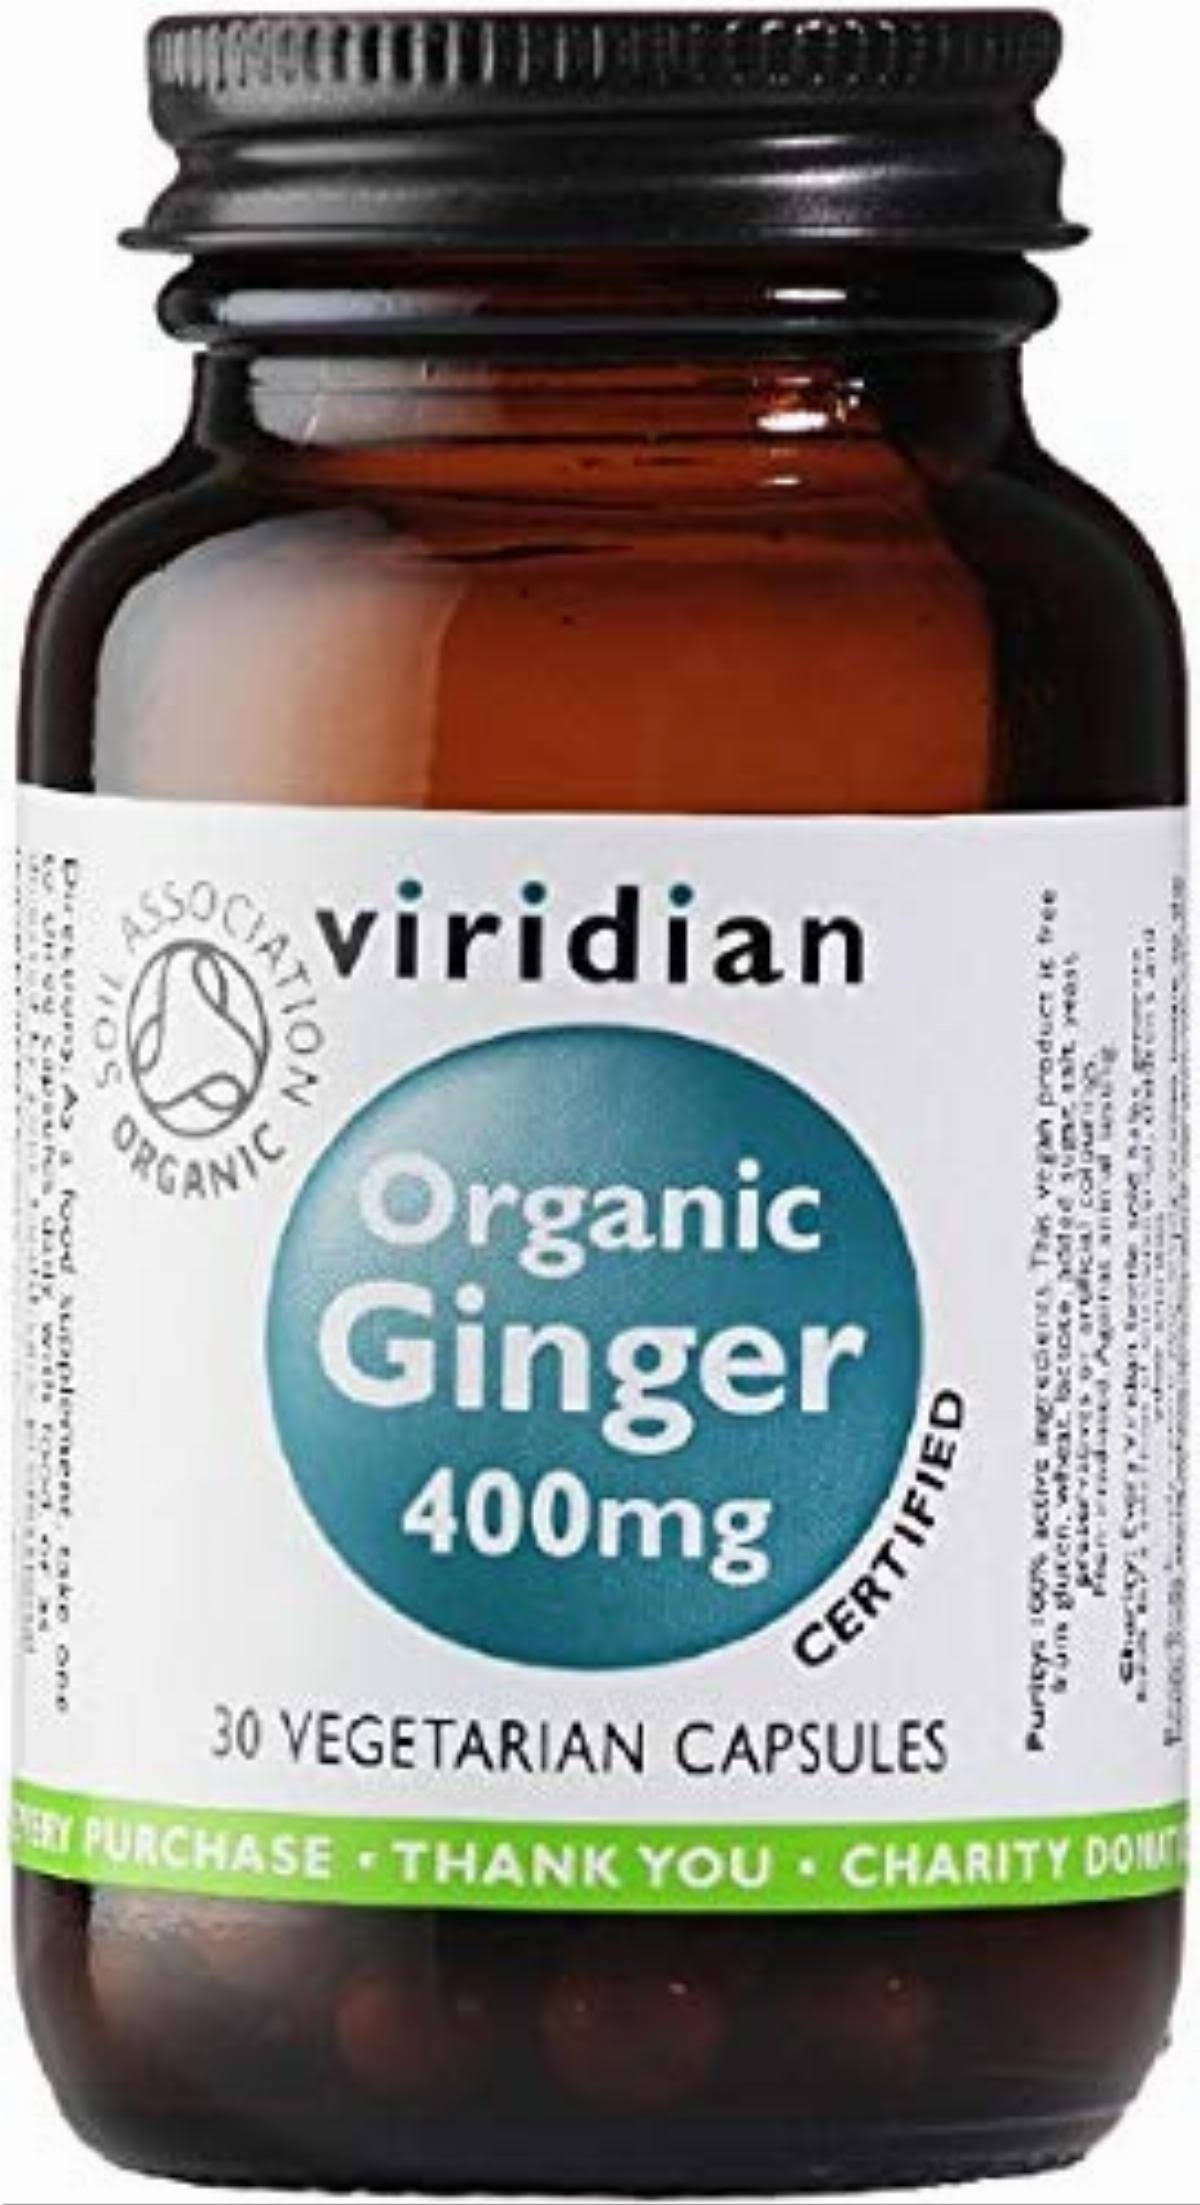 Viridian Organic Ginger - 30 Capsules